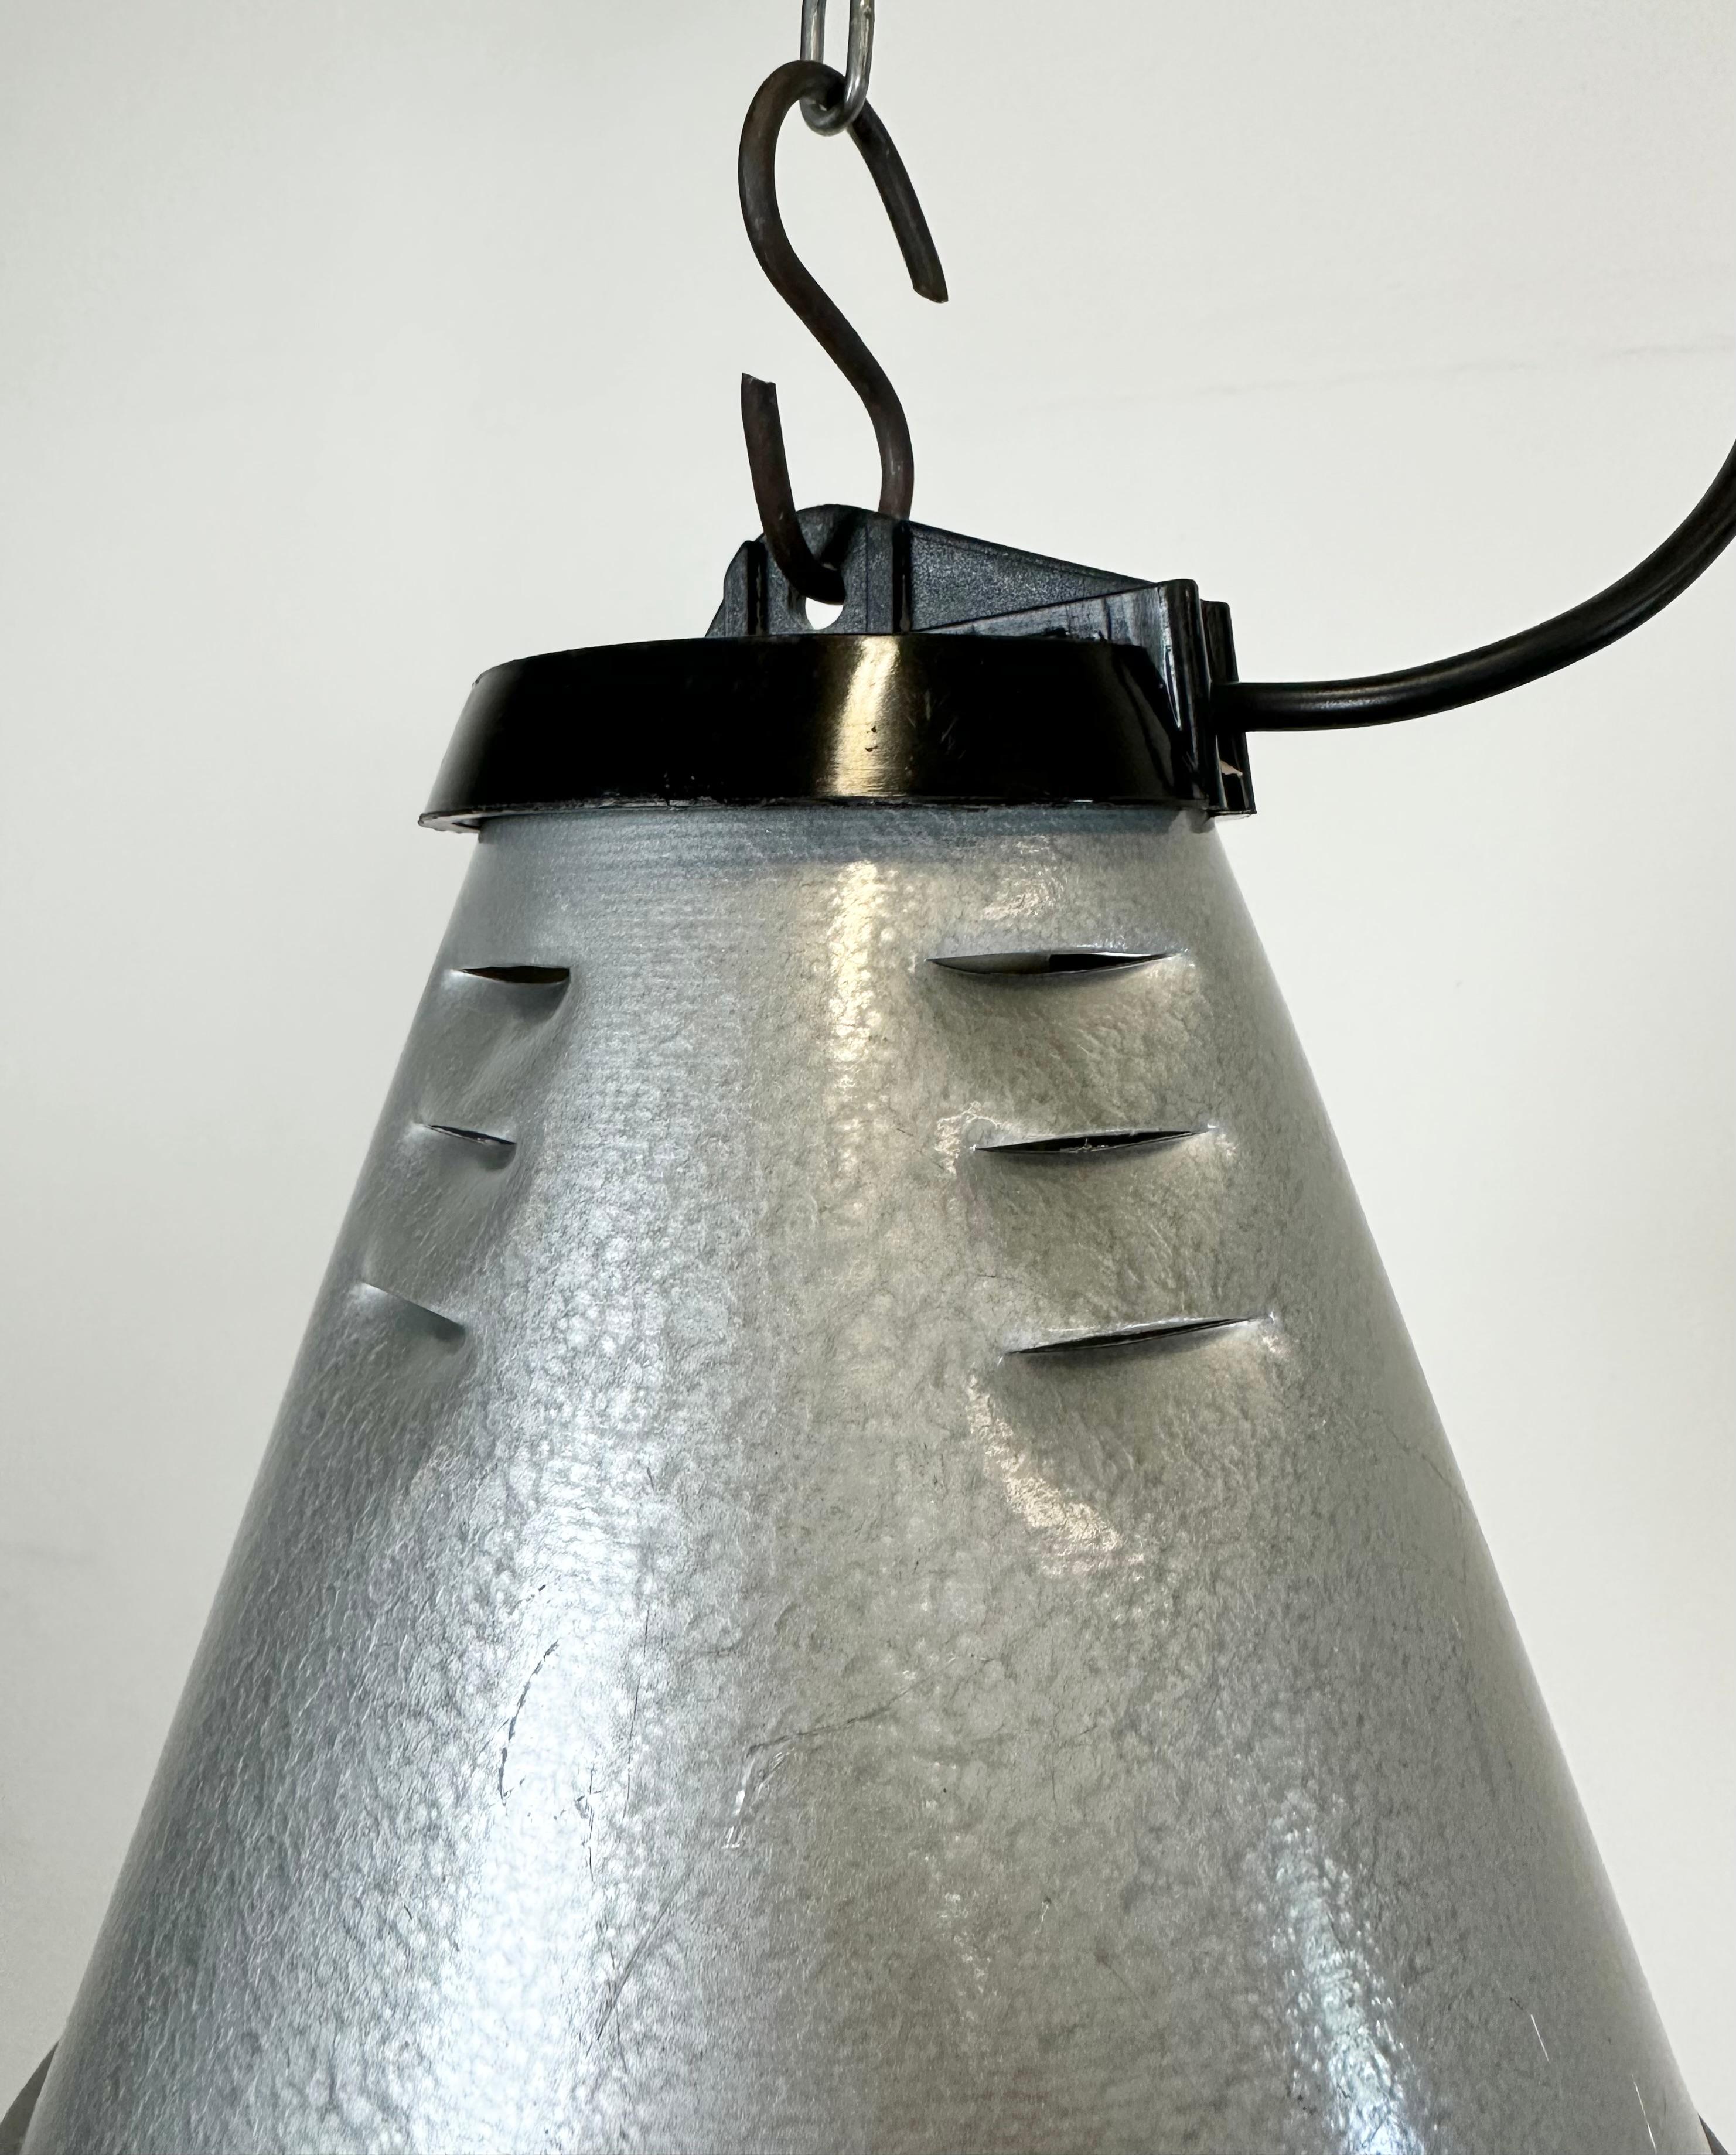 Grey Industrial Aluminium Cage Pendant Lamp, 1970s For Sale 3